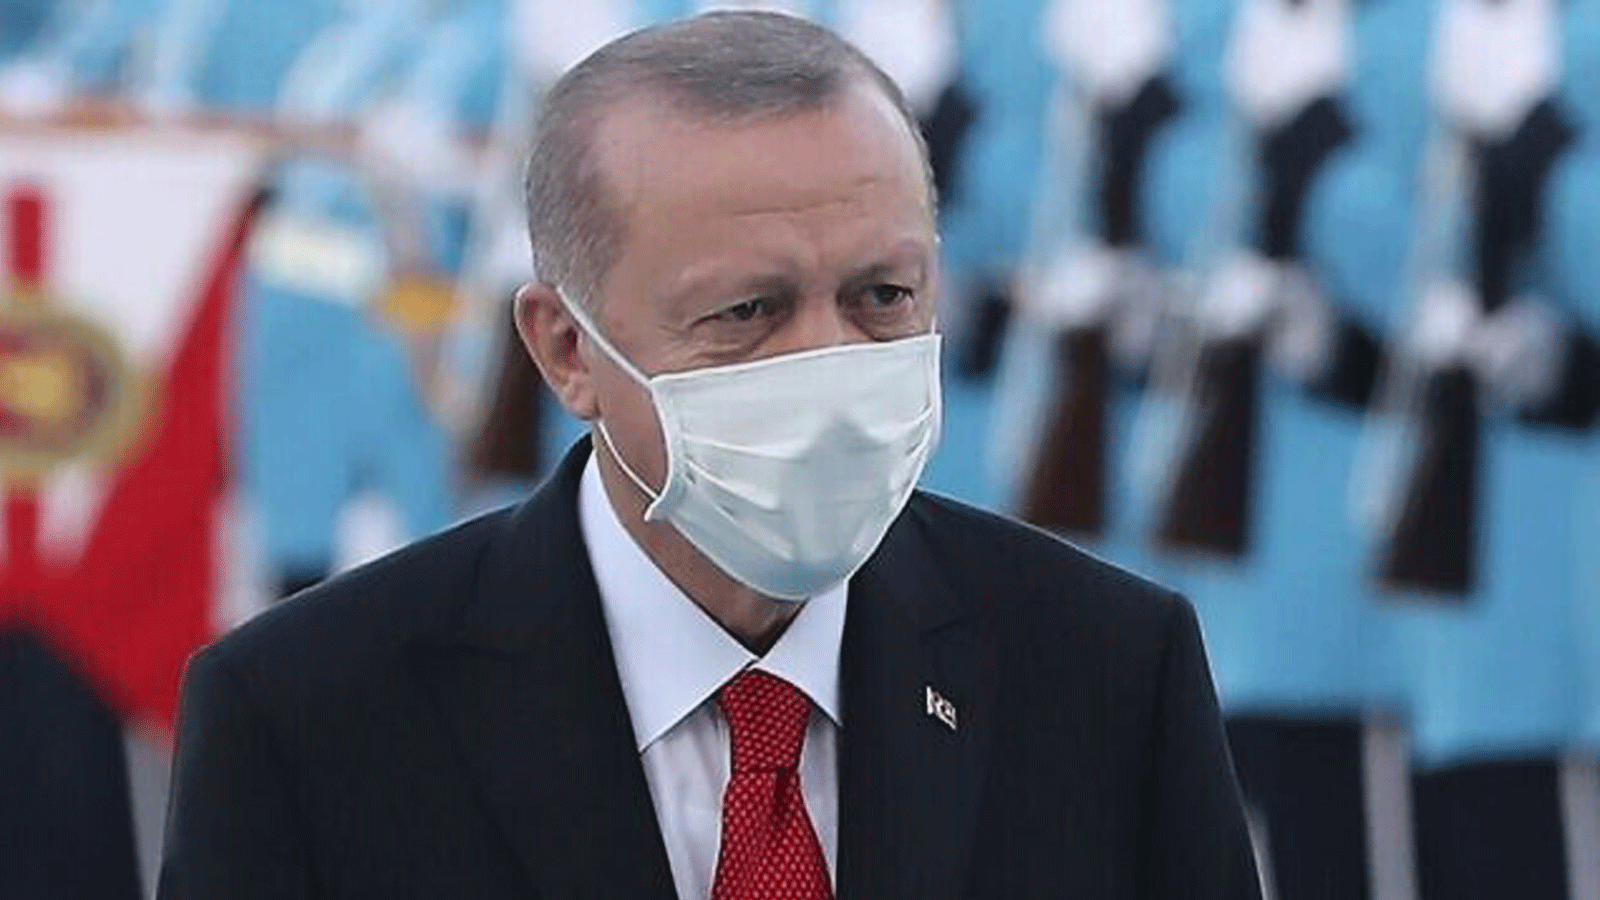 الرئيس التركي رجب طيب أردوغان خلال حفل رسمي في أنقرة. 26 تشرين الأول\ أكتوبر 2020